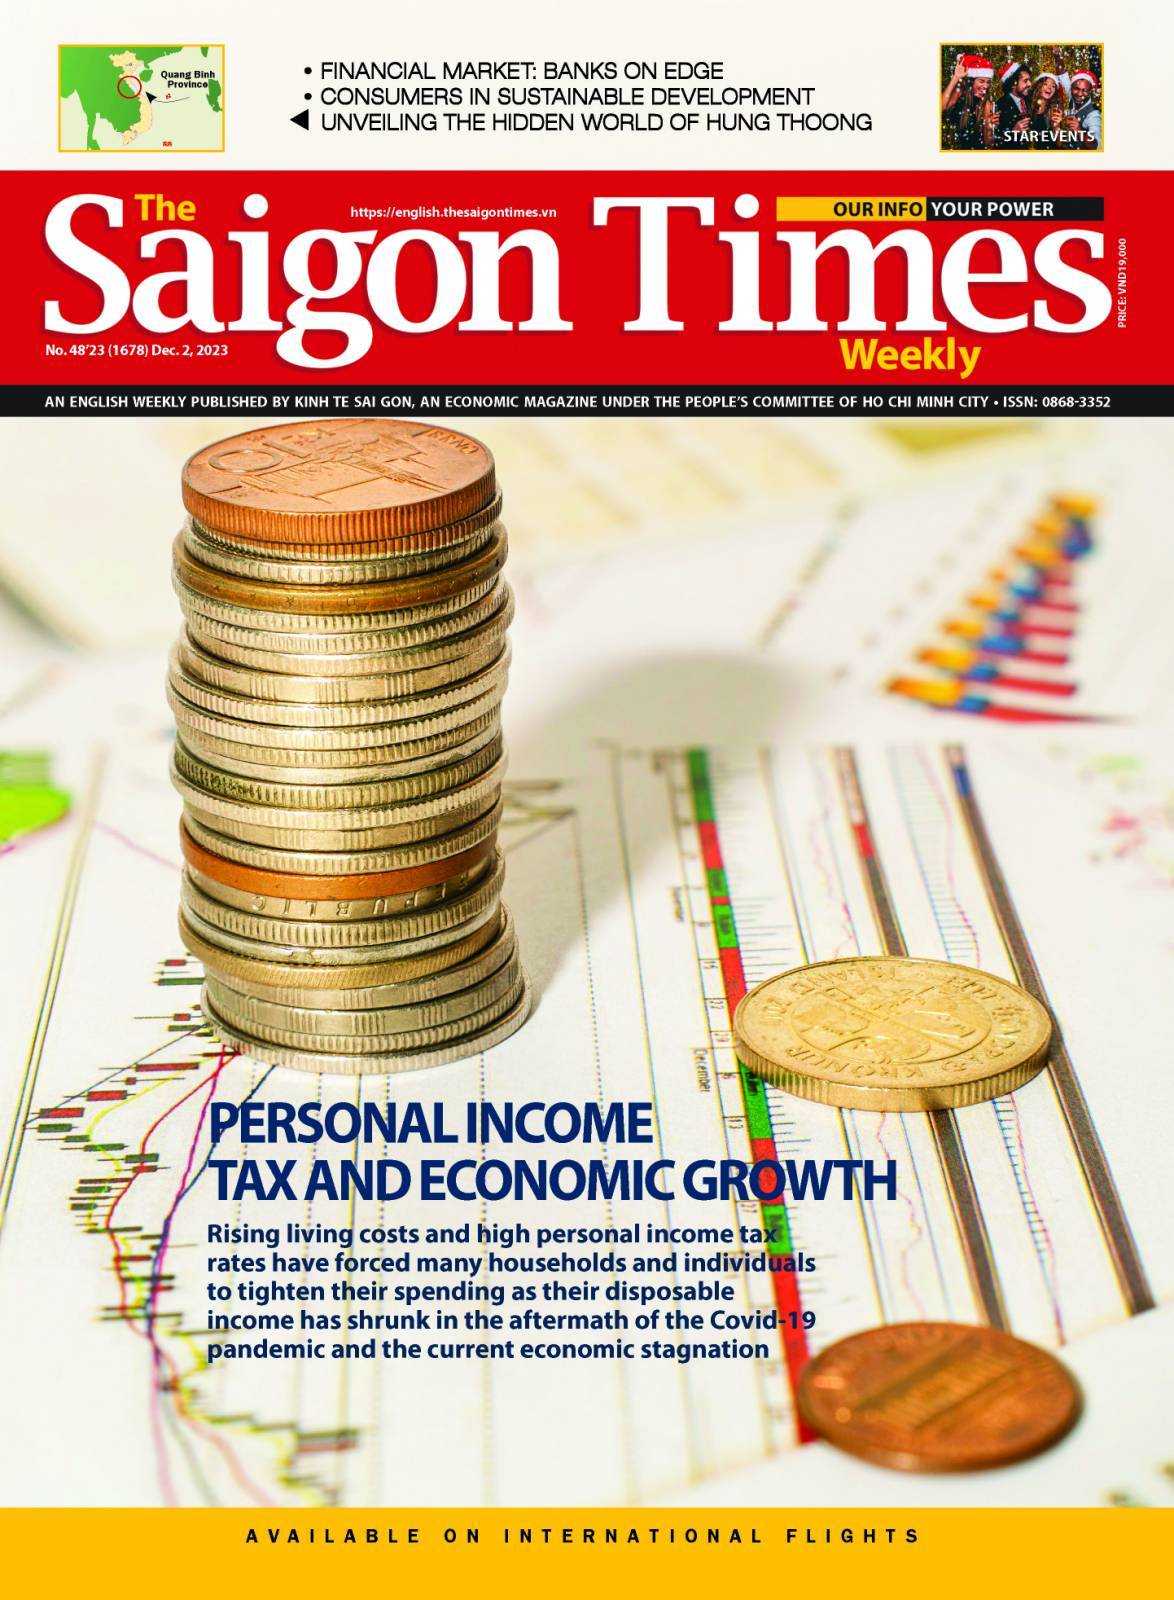 The Saigon Times Weekly kỳ số 48-2023